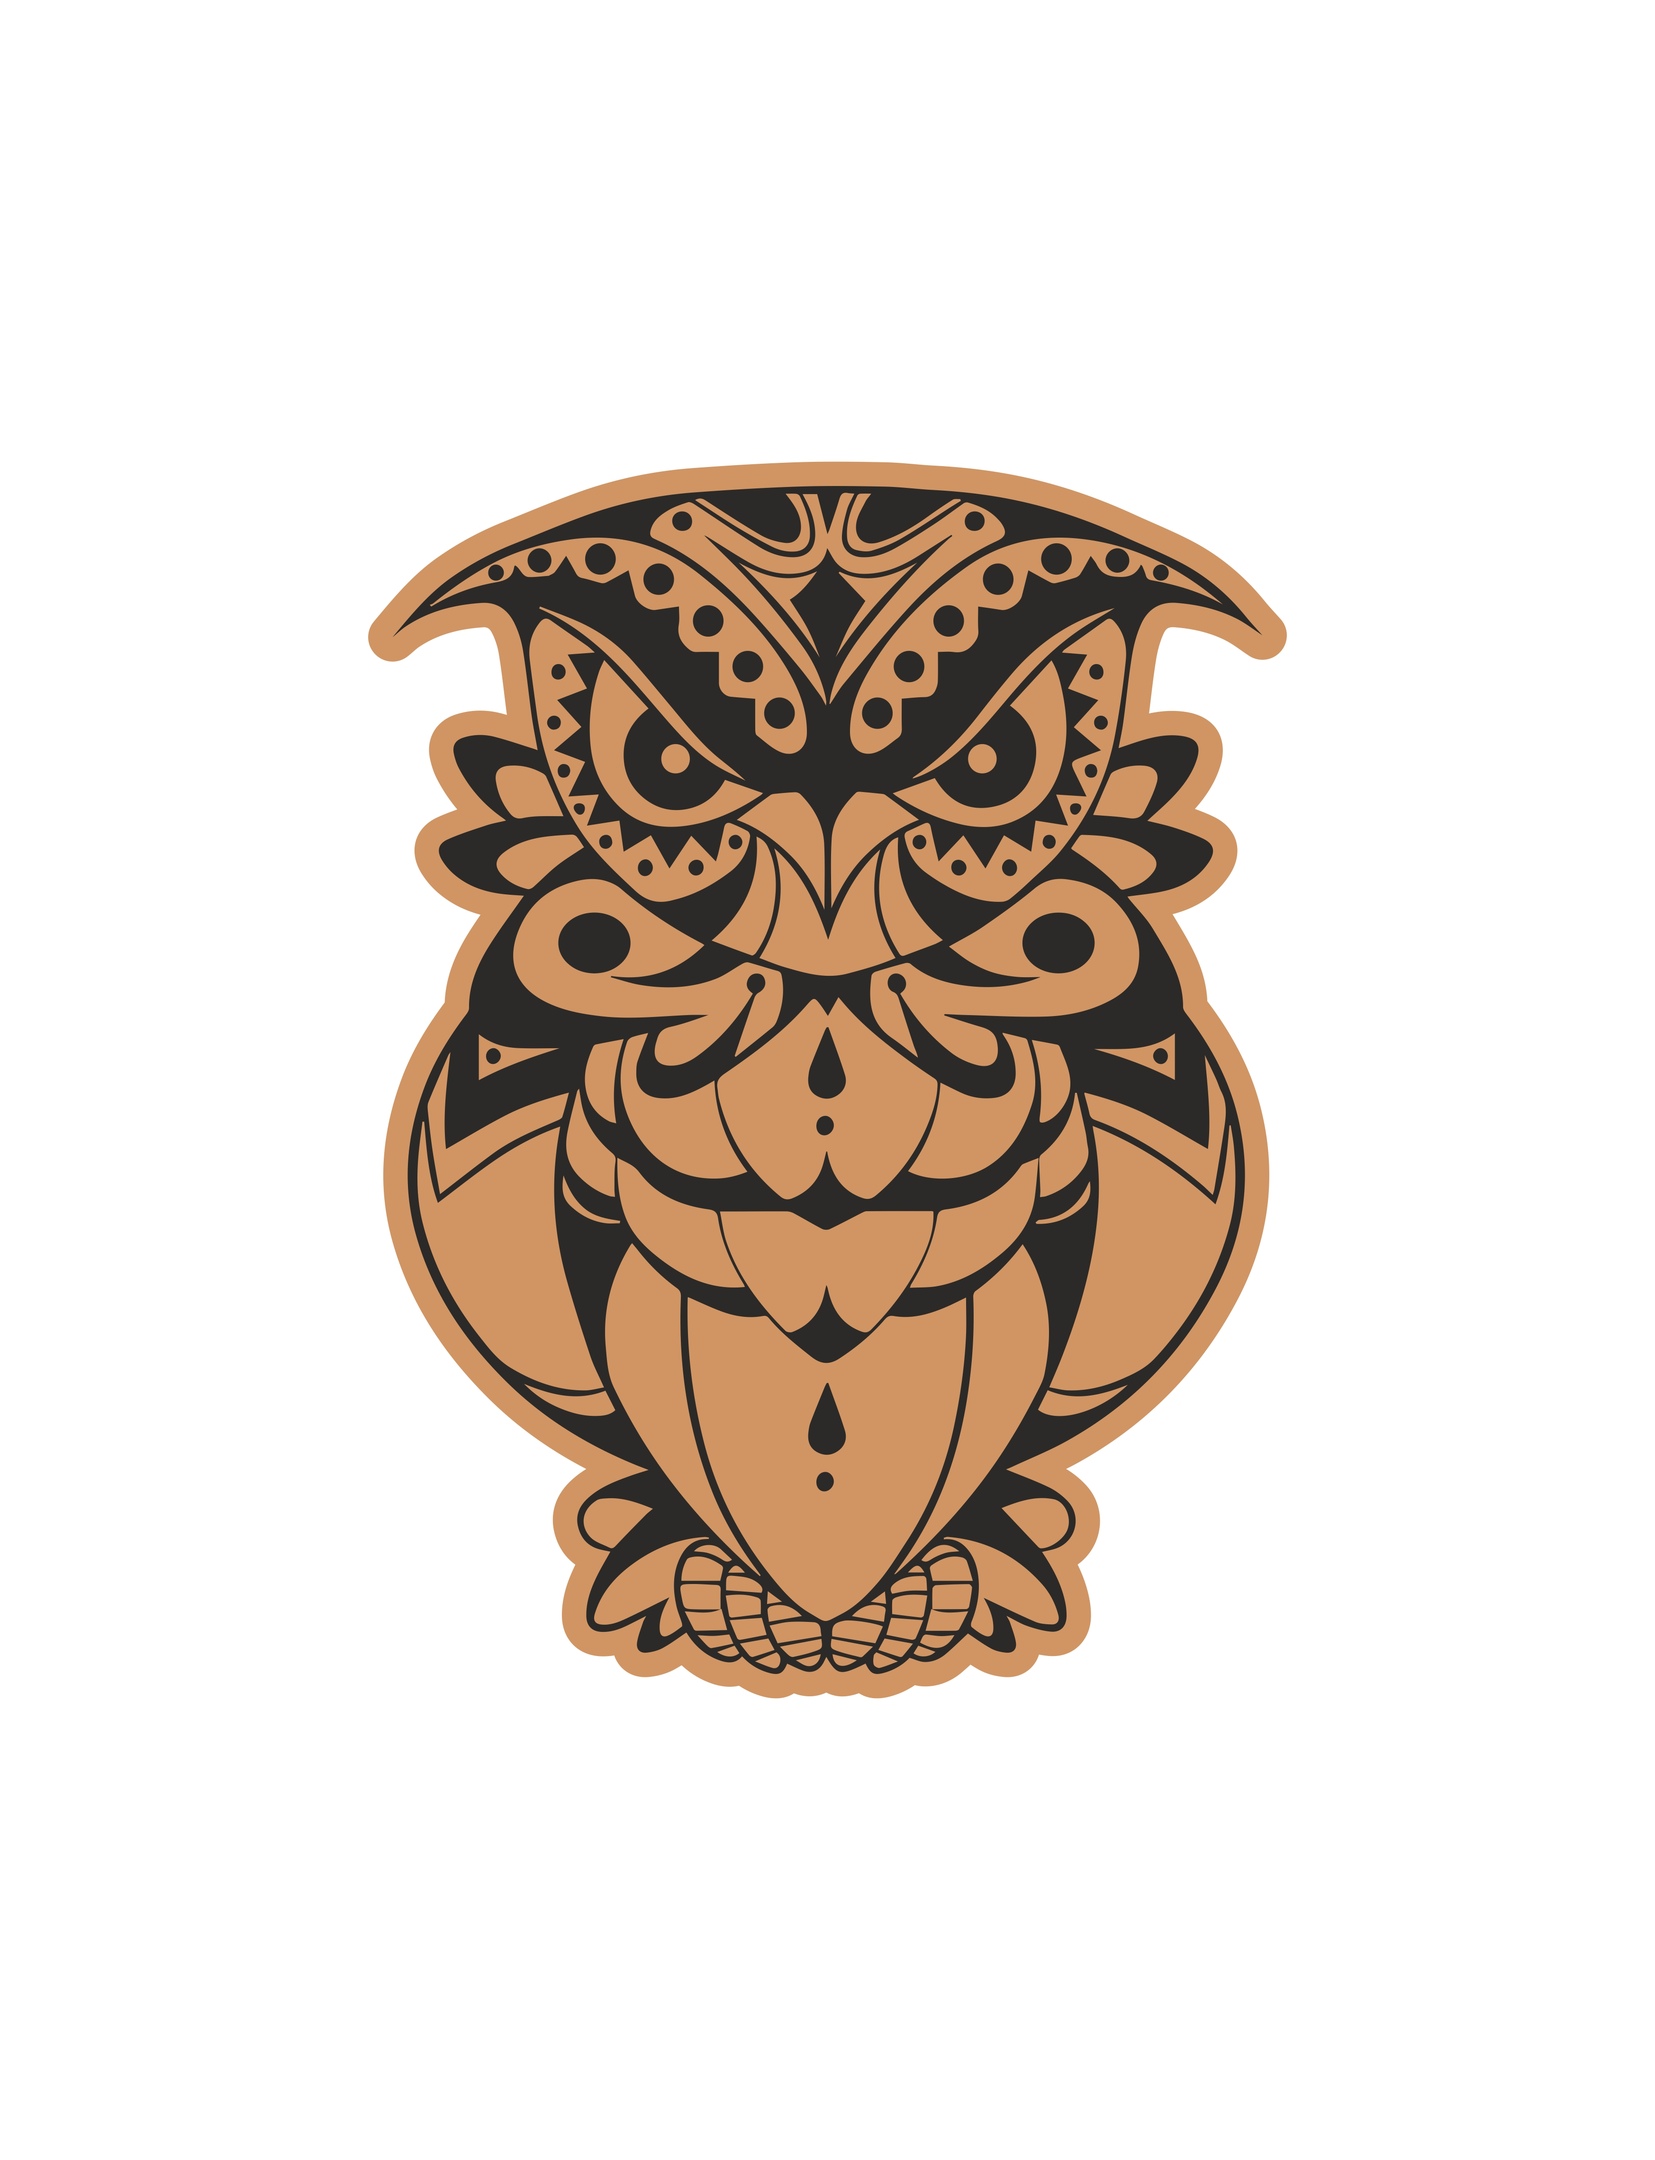 Декоративный шаблон гравировки Angry Bird Owl для лазерной резки